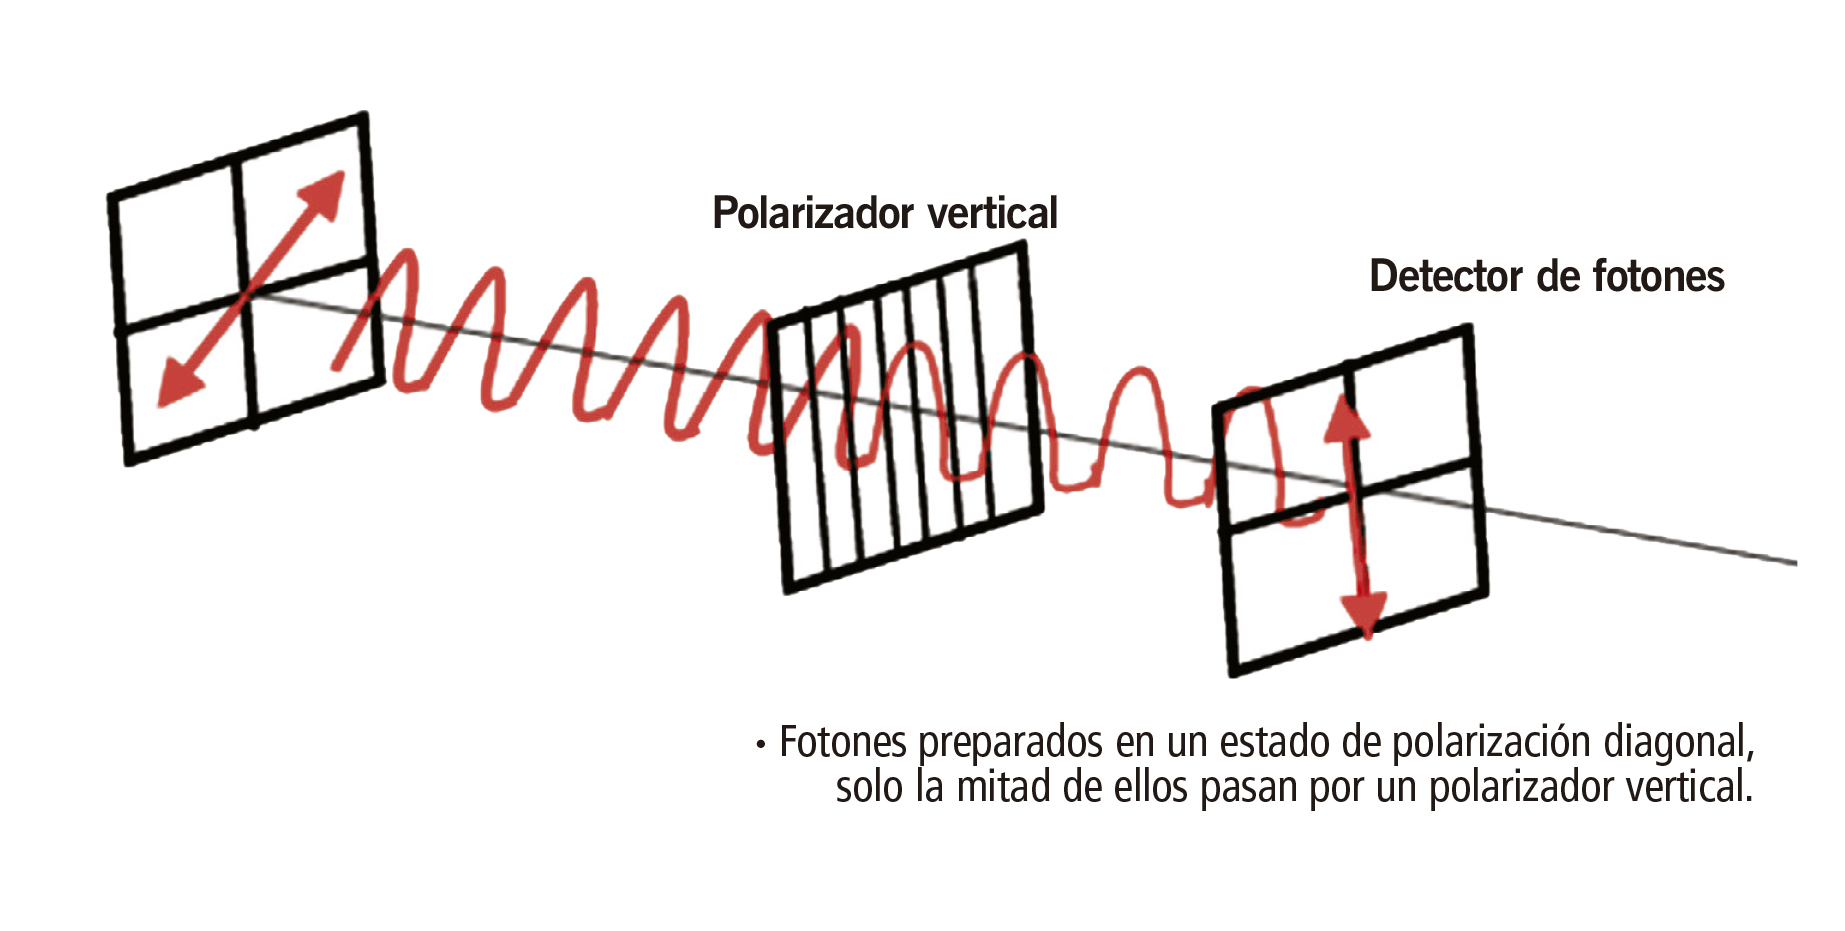 Fotones preparados en un estado de polarización diagonal, solo la mitad de ellos pasan por un polarizador vertical.